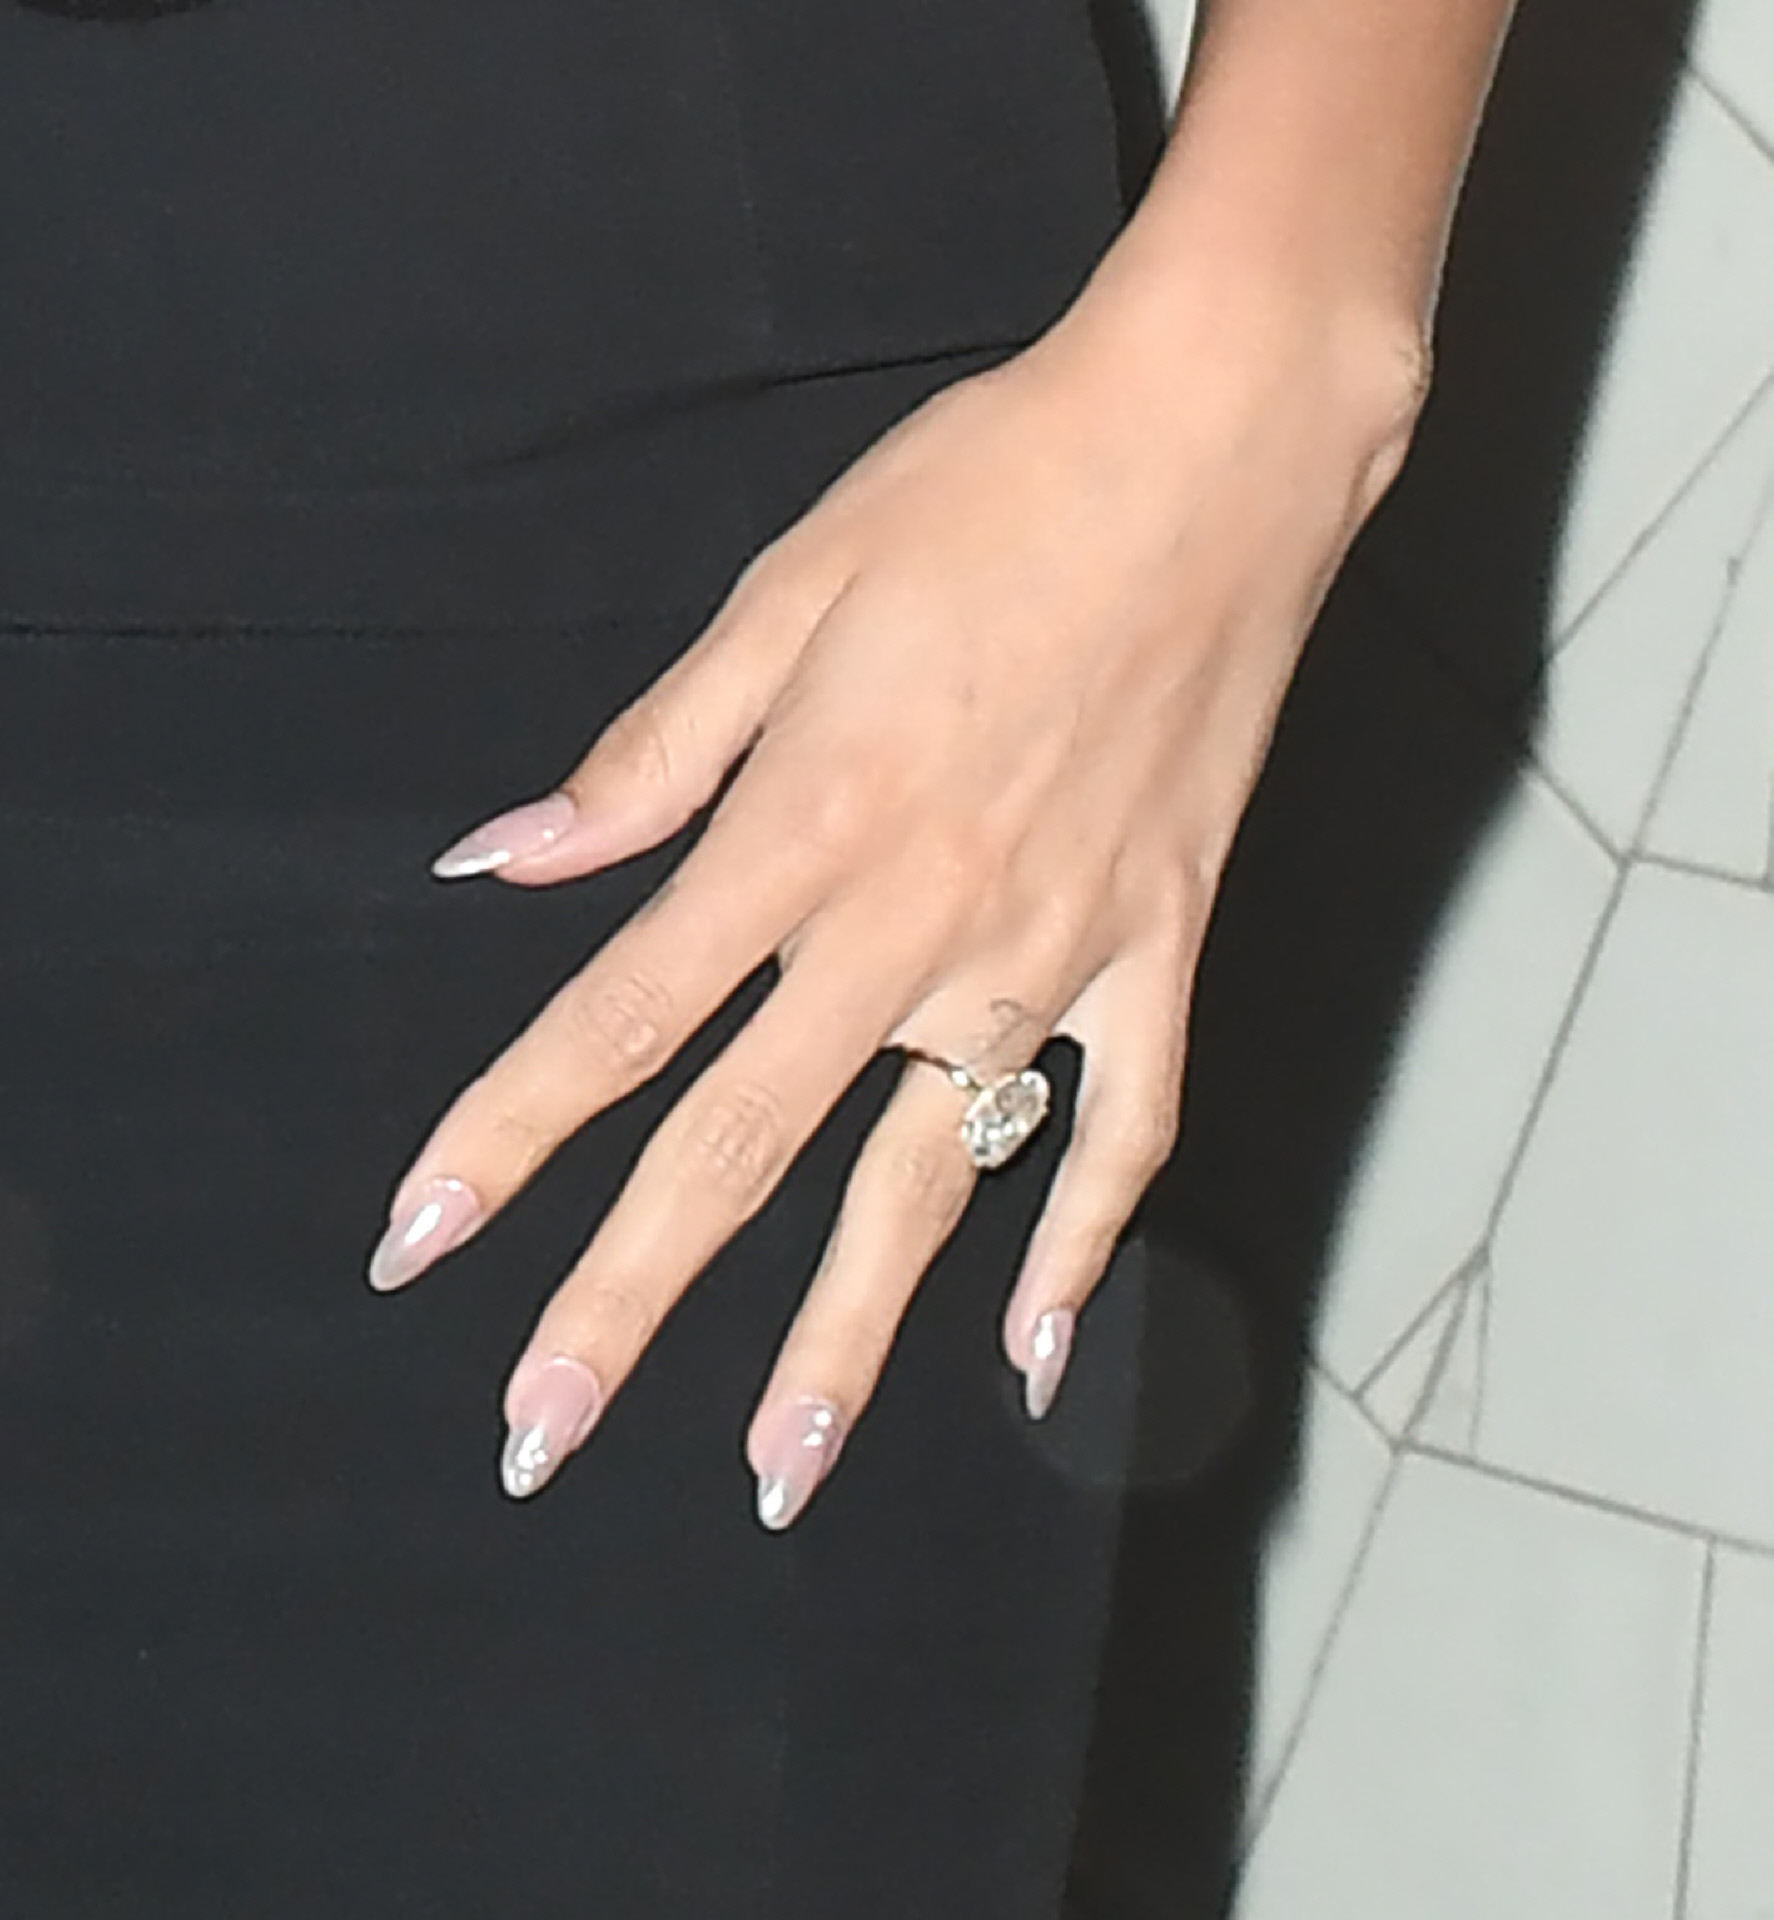 Las uñas glazed donut de Hailey Bieber.